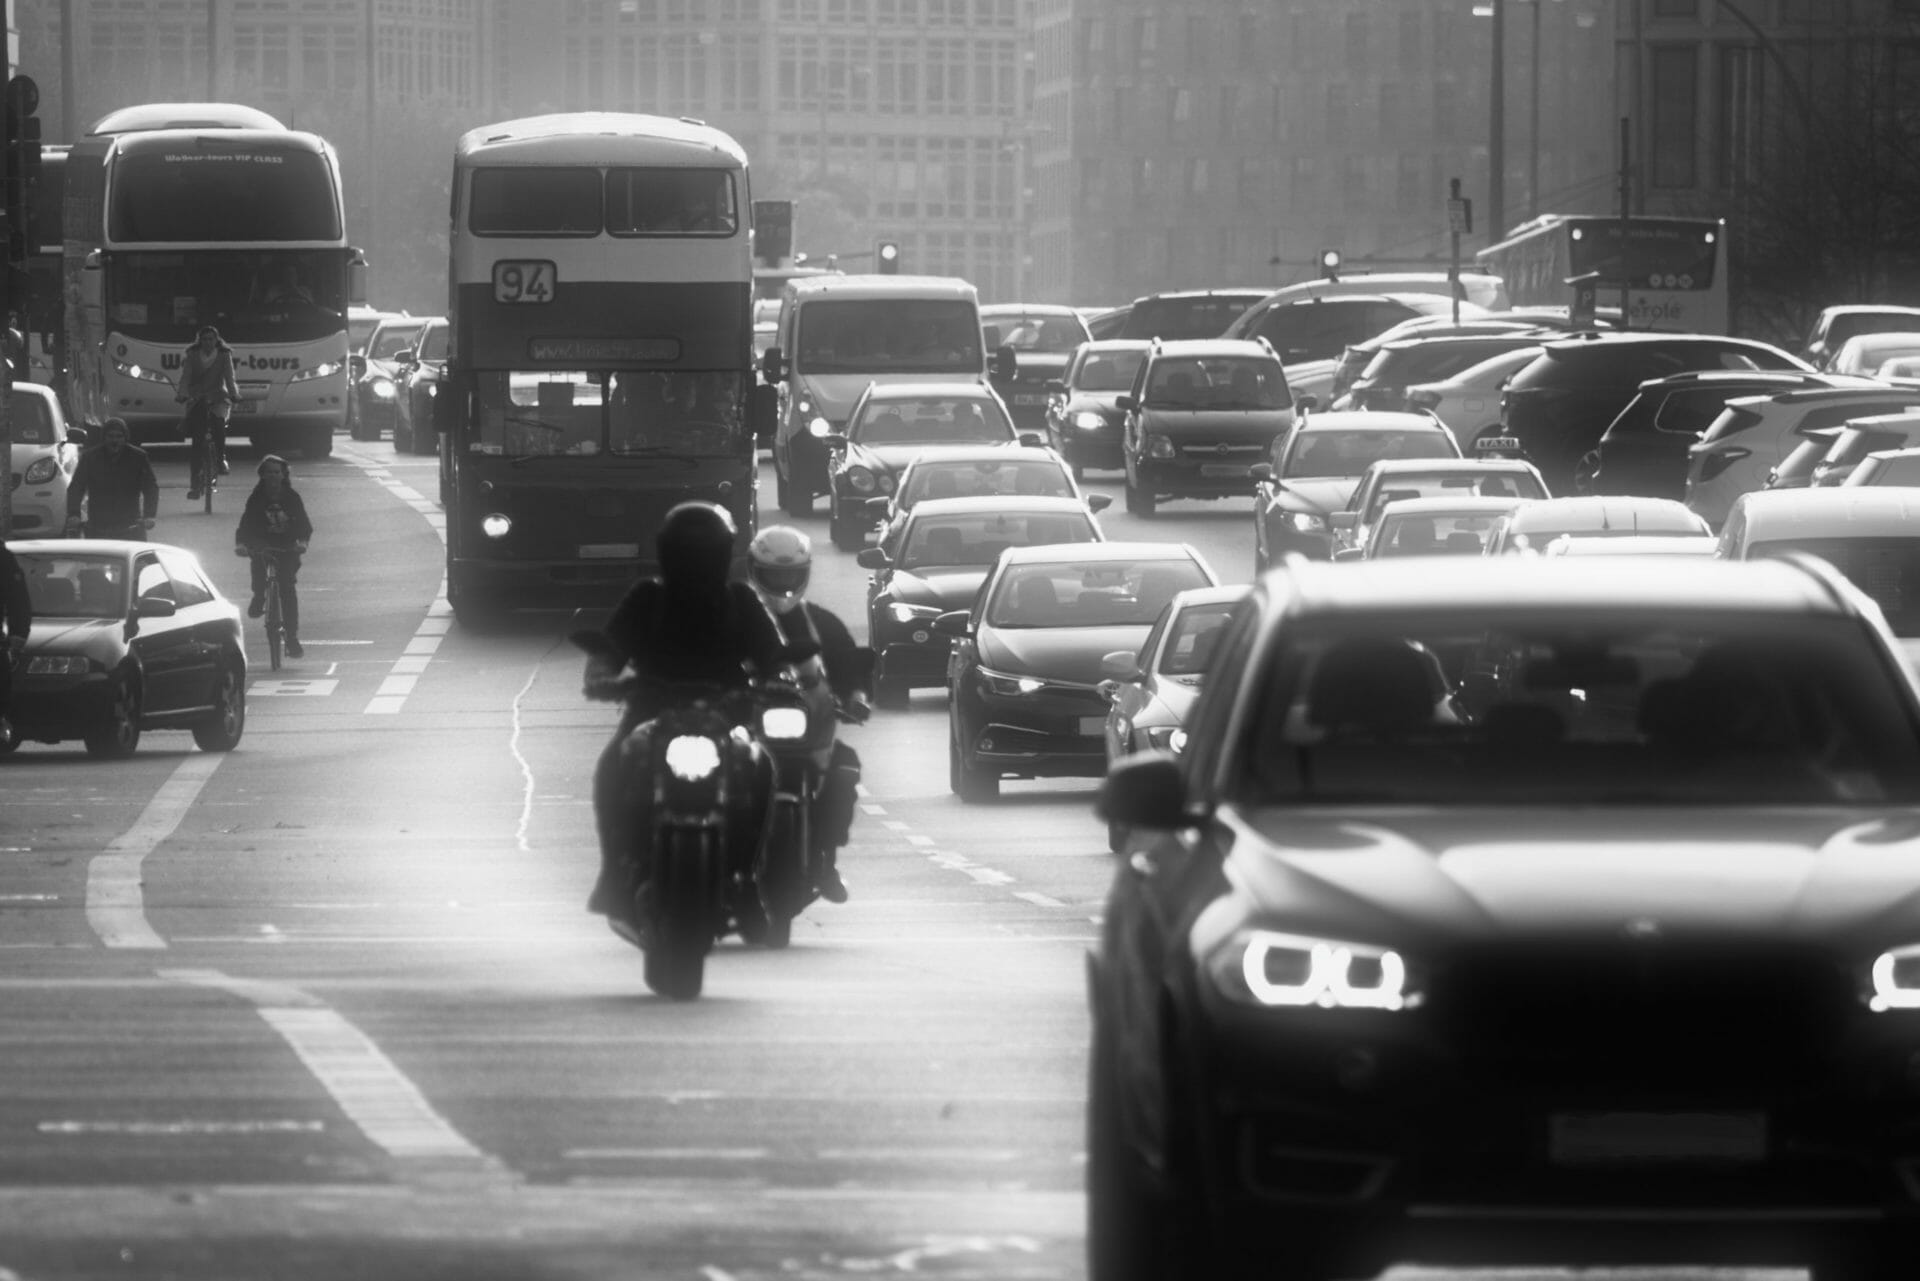 Auto- und Motorradfahrer sehen unterschiedliche Dinge im Straßenverkehr
- auch in der MOTORRAD NACHRICHTEN APP